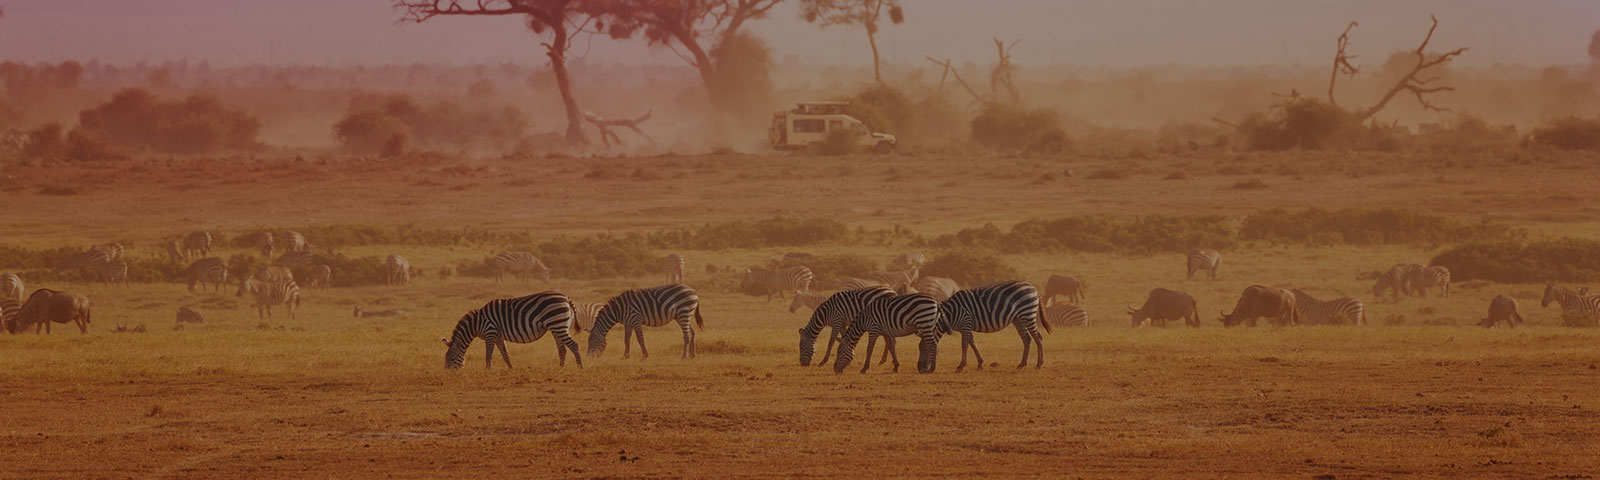 zebras grazing on a wildlife preserve